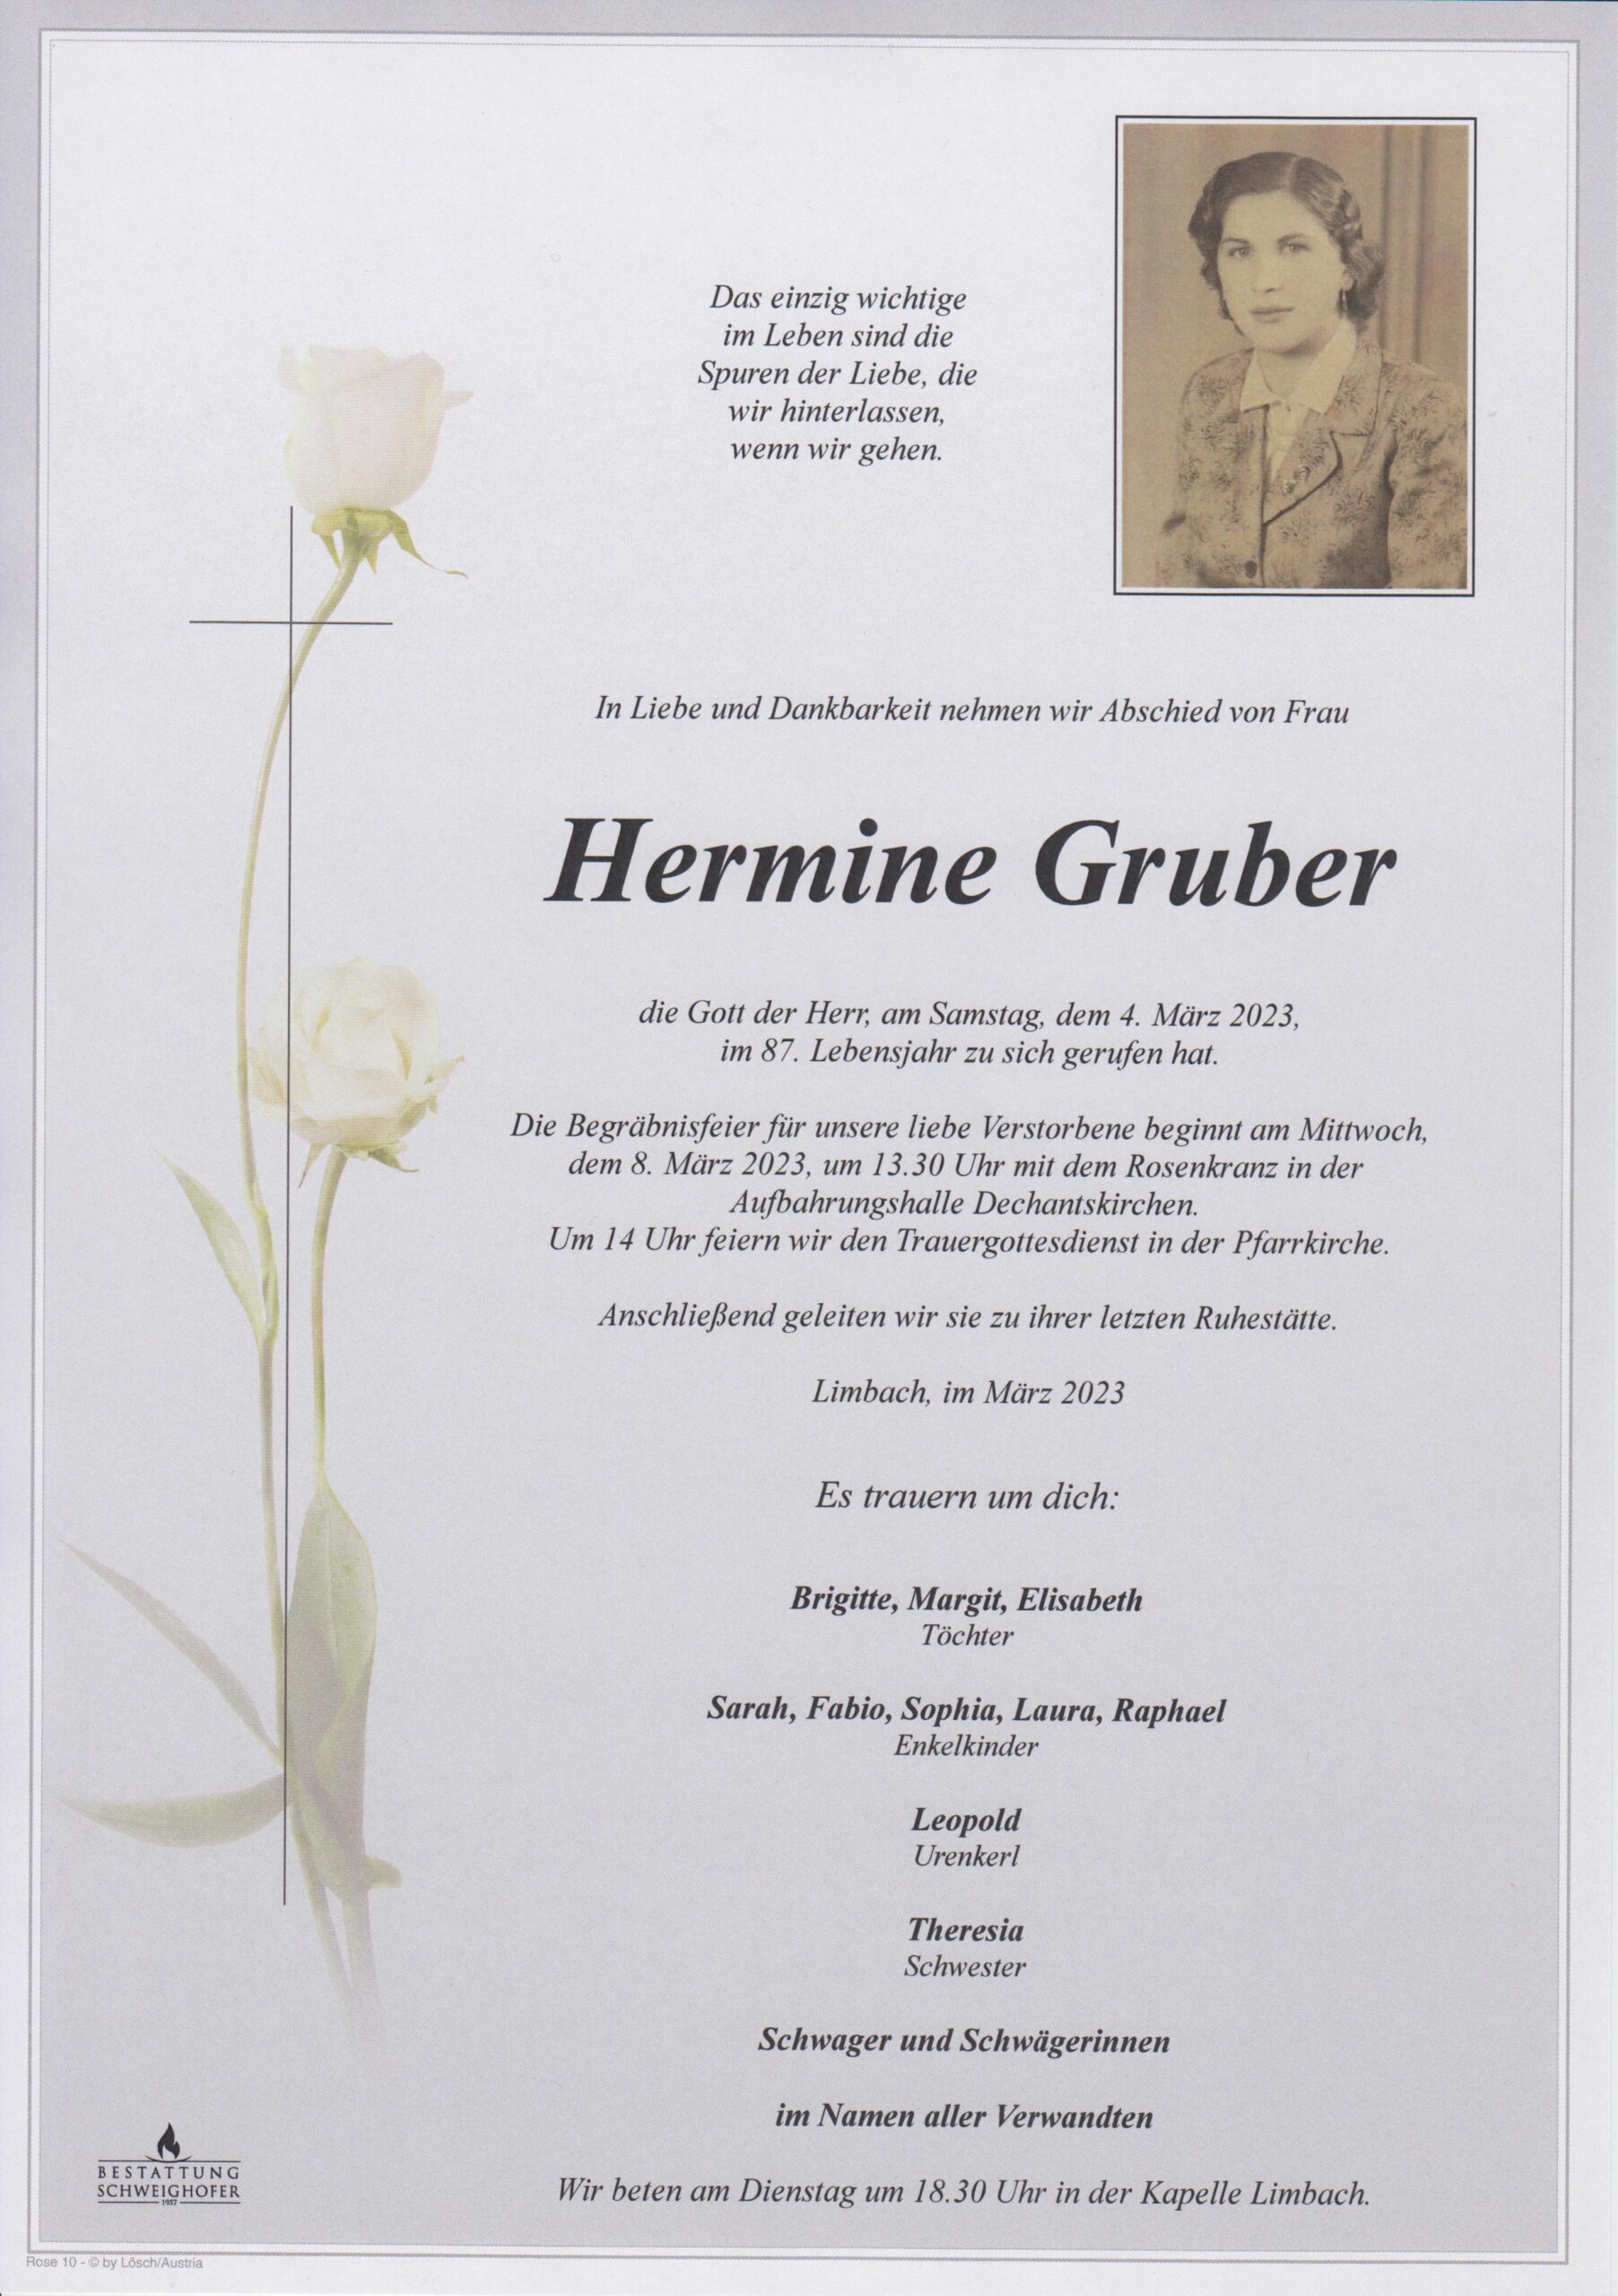 Hermine Gruber